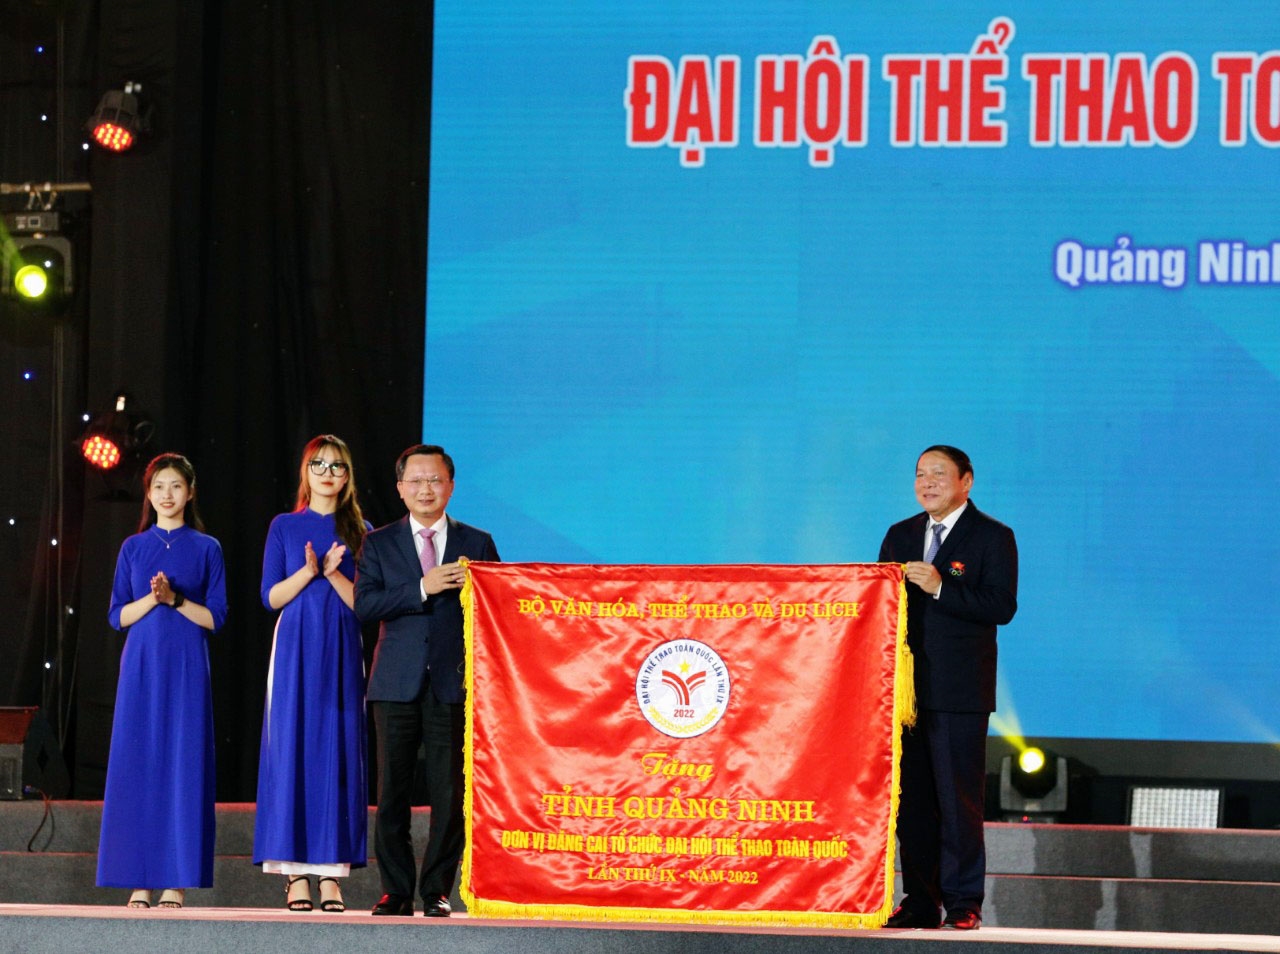 Bộ Trưởng Bộ Văn hóa, Thể thao và Du lịch Nguyễn Văn Hùng trao Cờ lưu niệm cho tỉnh Quảng Ninh